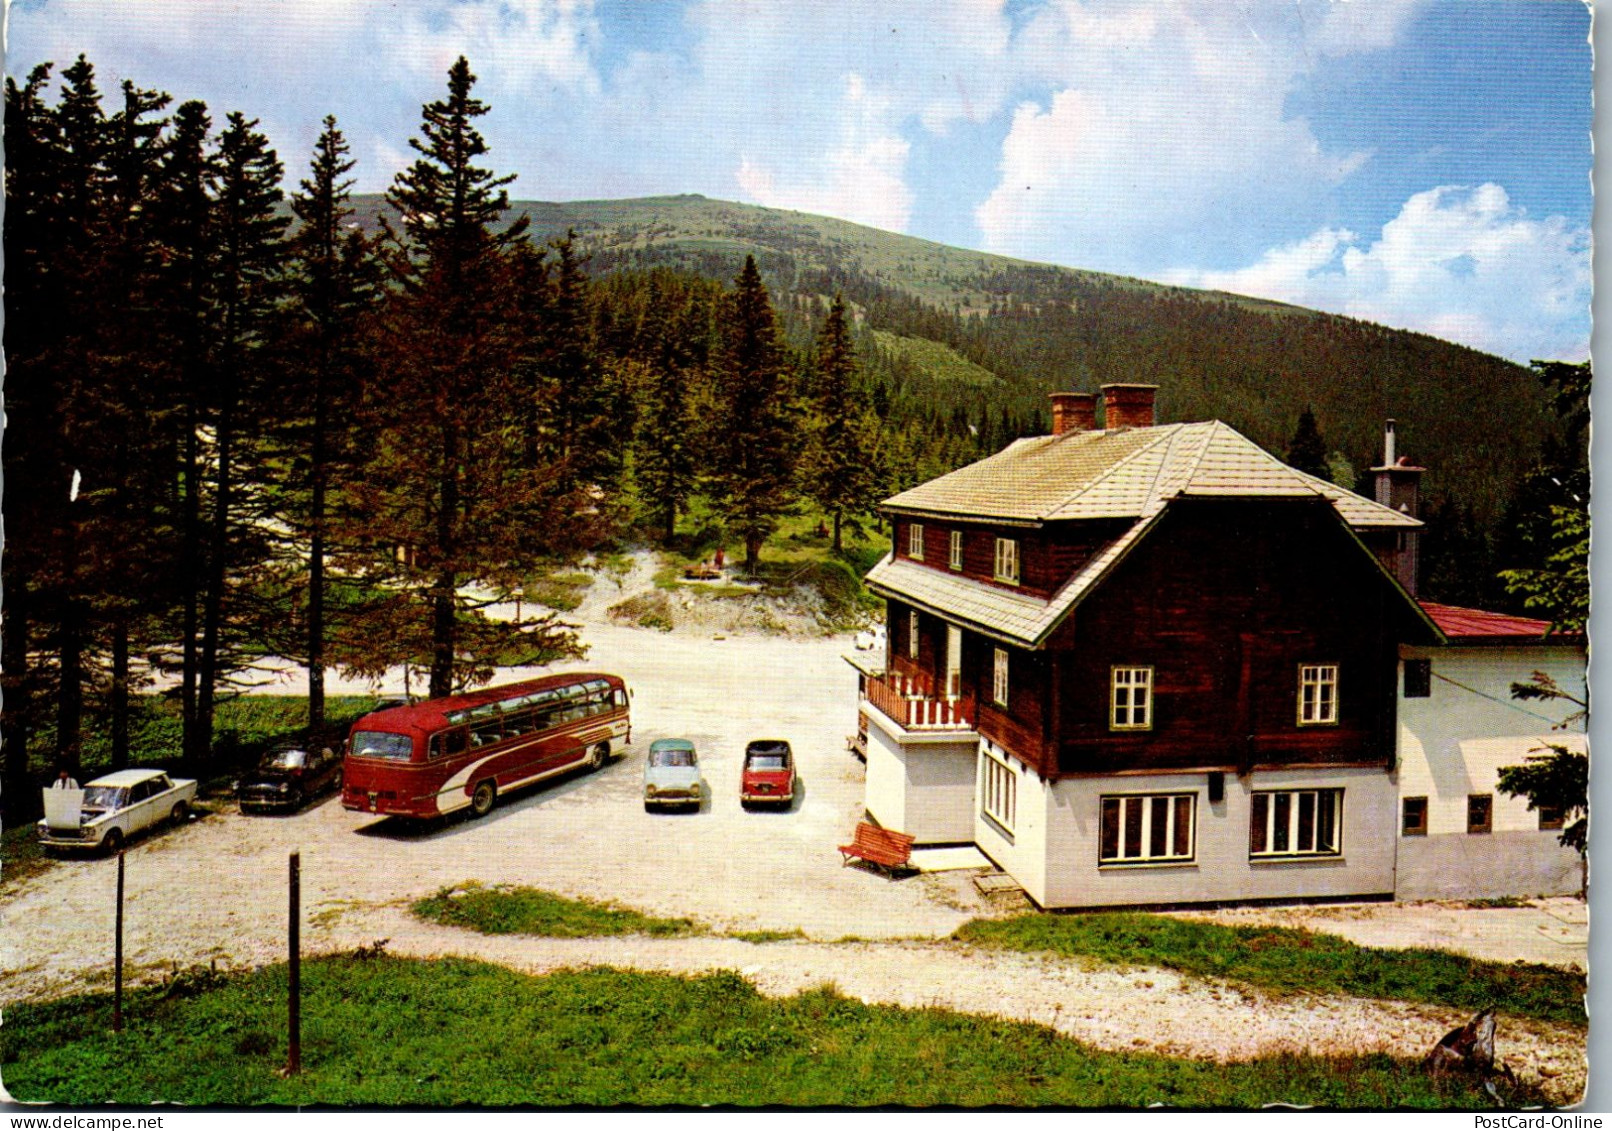 51917 - Steiermark - Steinhaus Am Semmering , Pfaffensattel , Gasthaus , M. Grundbichler - Gelaufen 1979 - Steinhaus Am Semmering